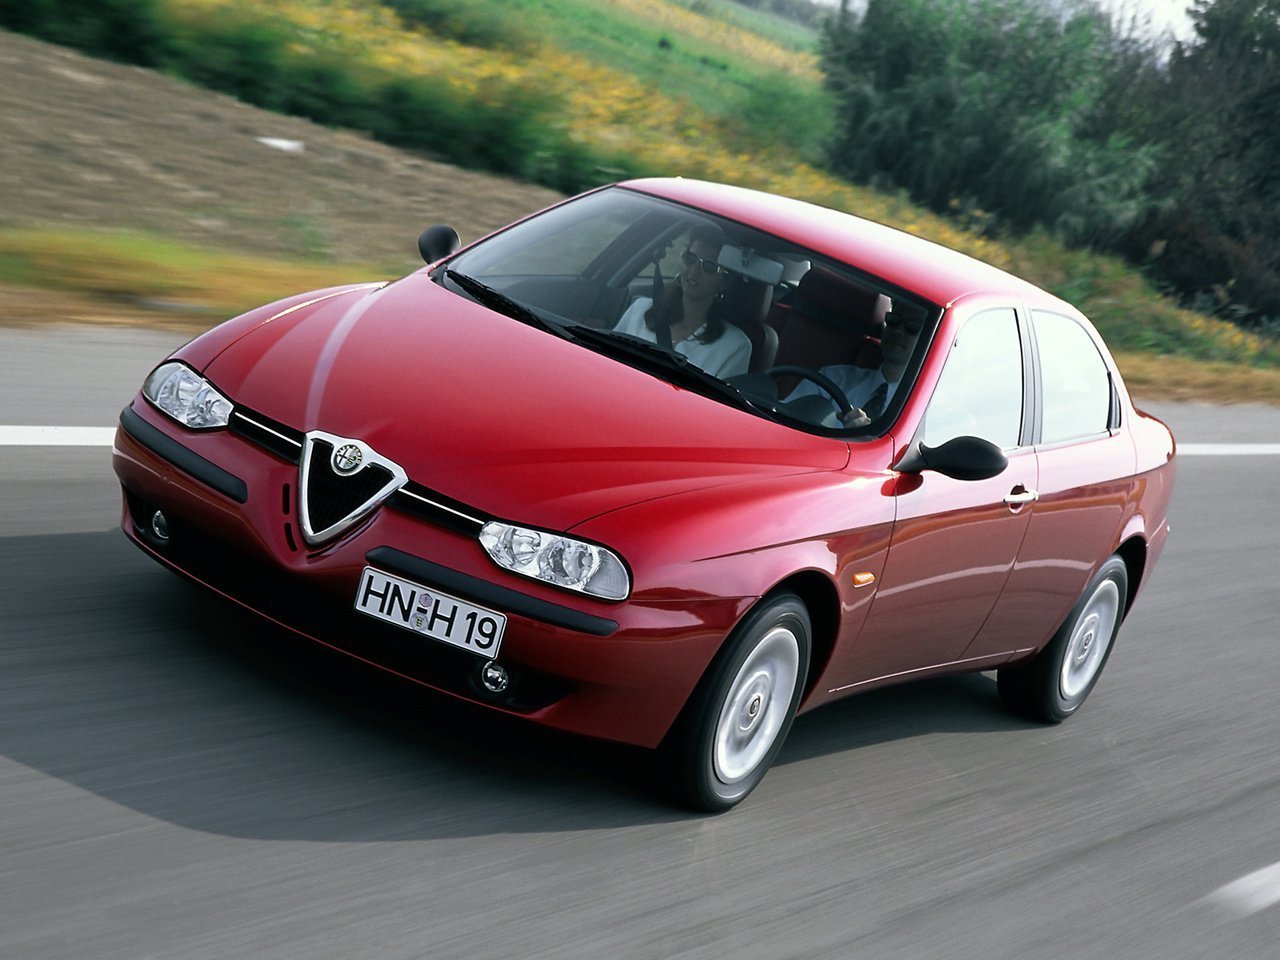 Снижаем расход Alfa Romeo 156 на топливо, устанавливаем ГБО